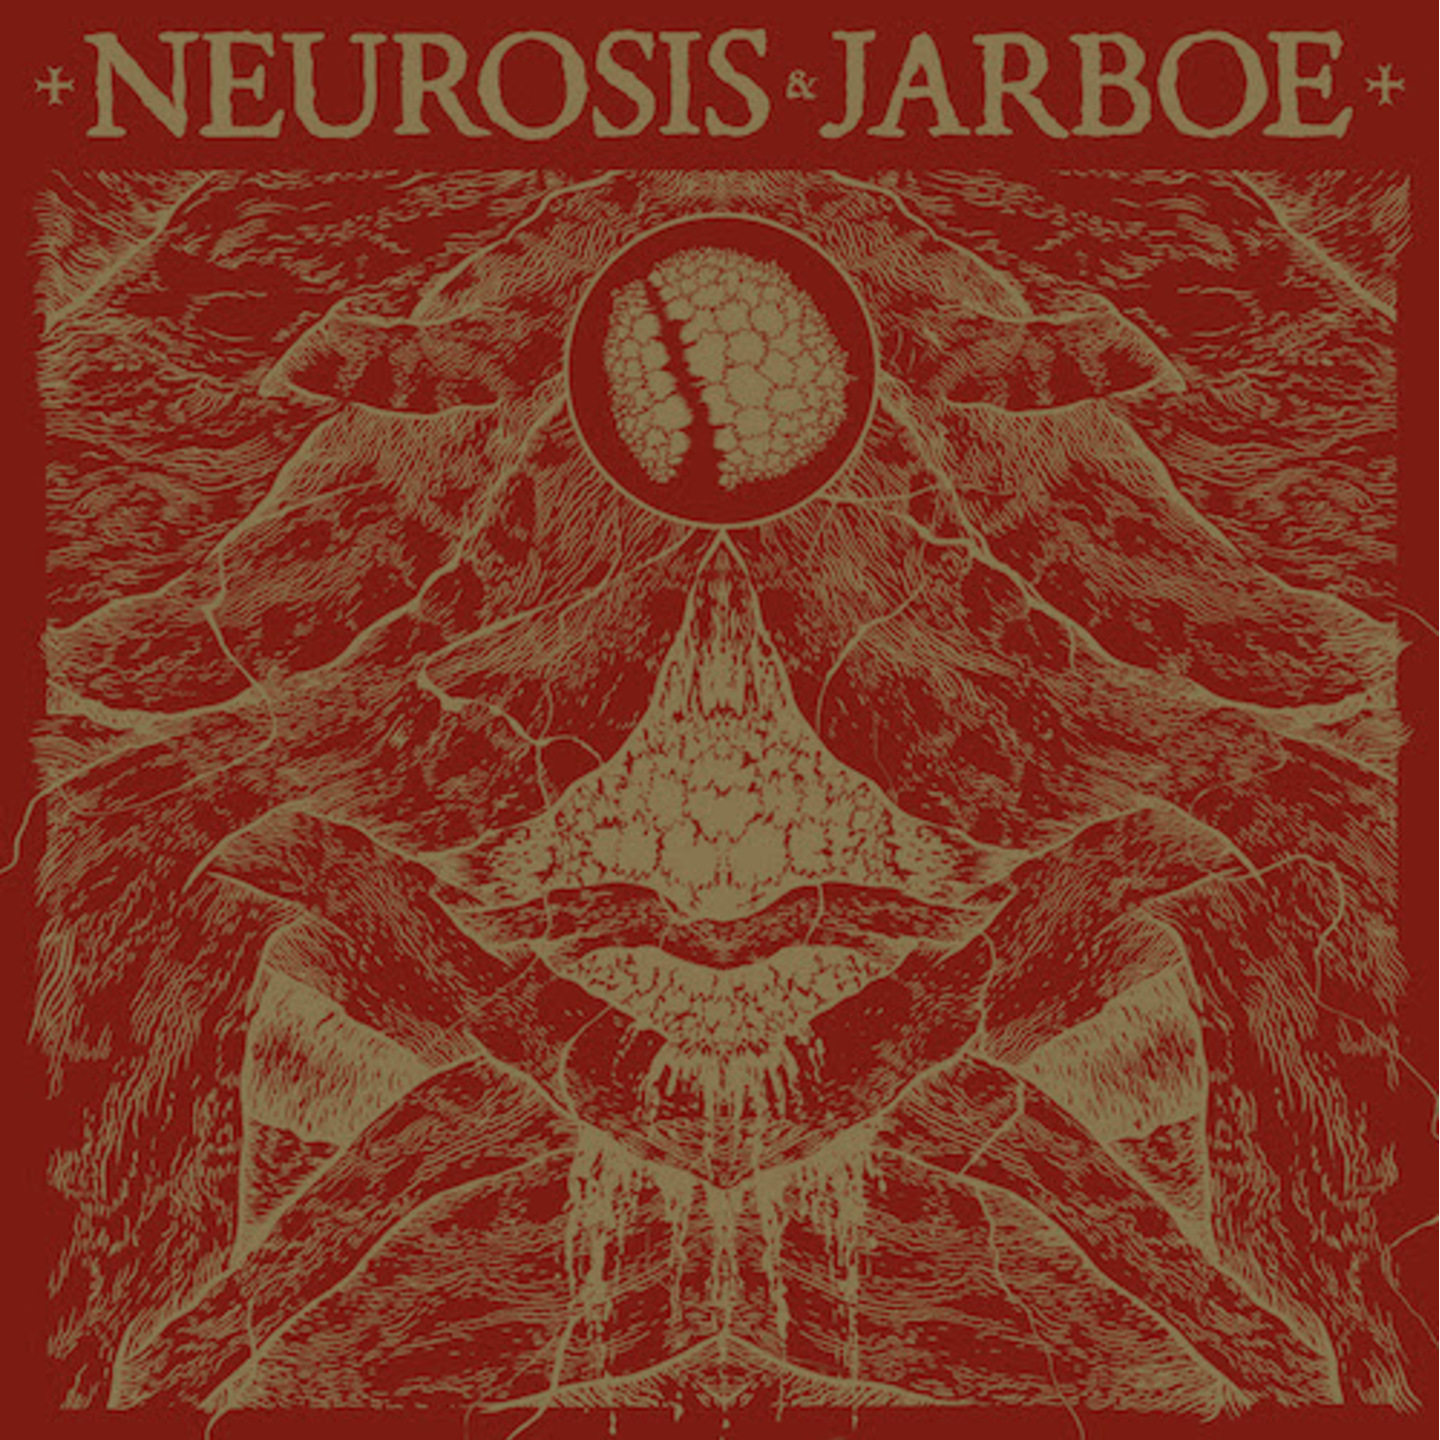 NEUROSIS & JARBOE - Neurosis & Jarboe 2xLP